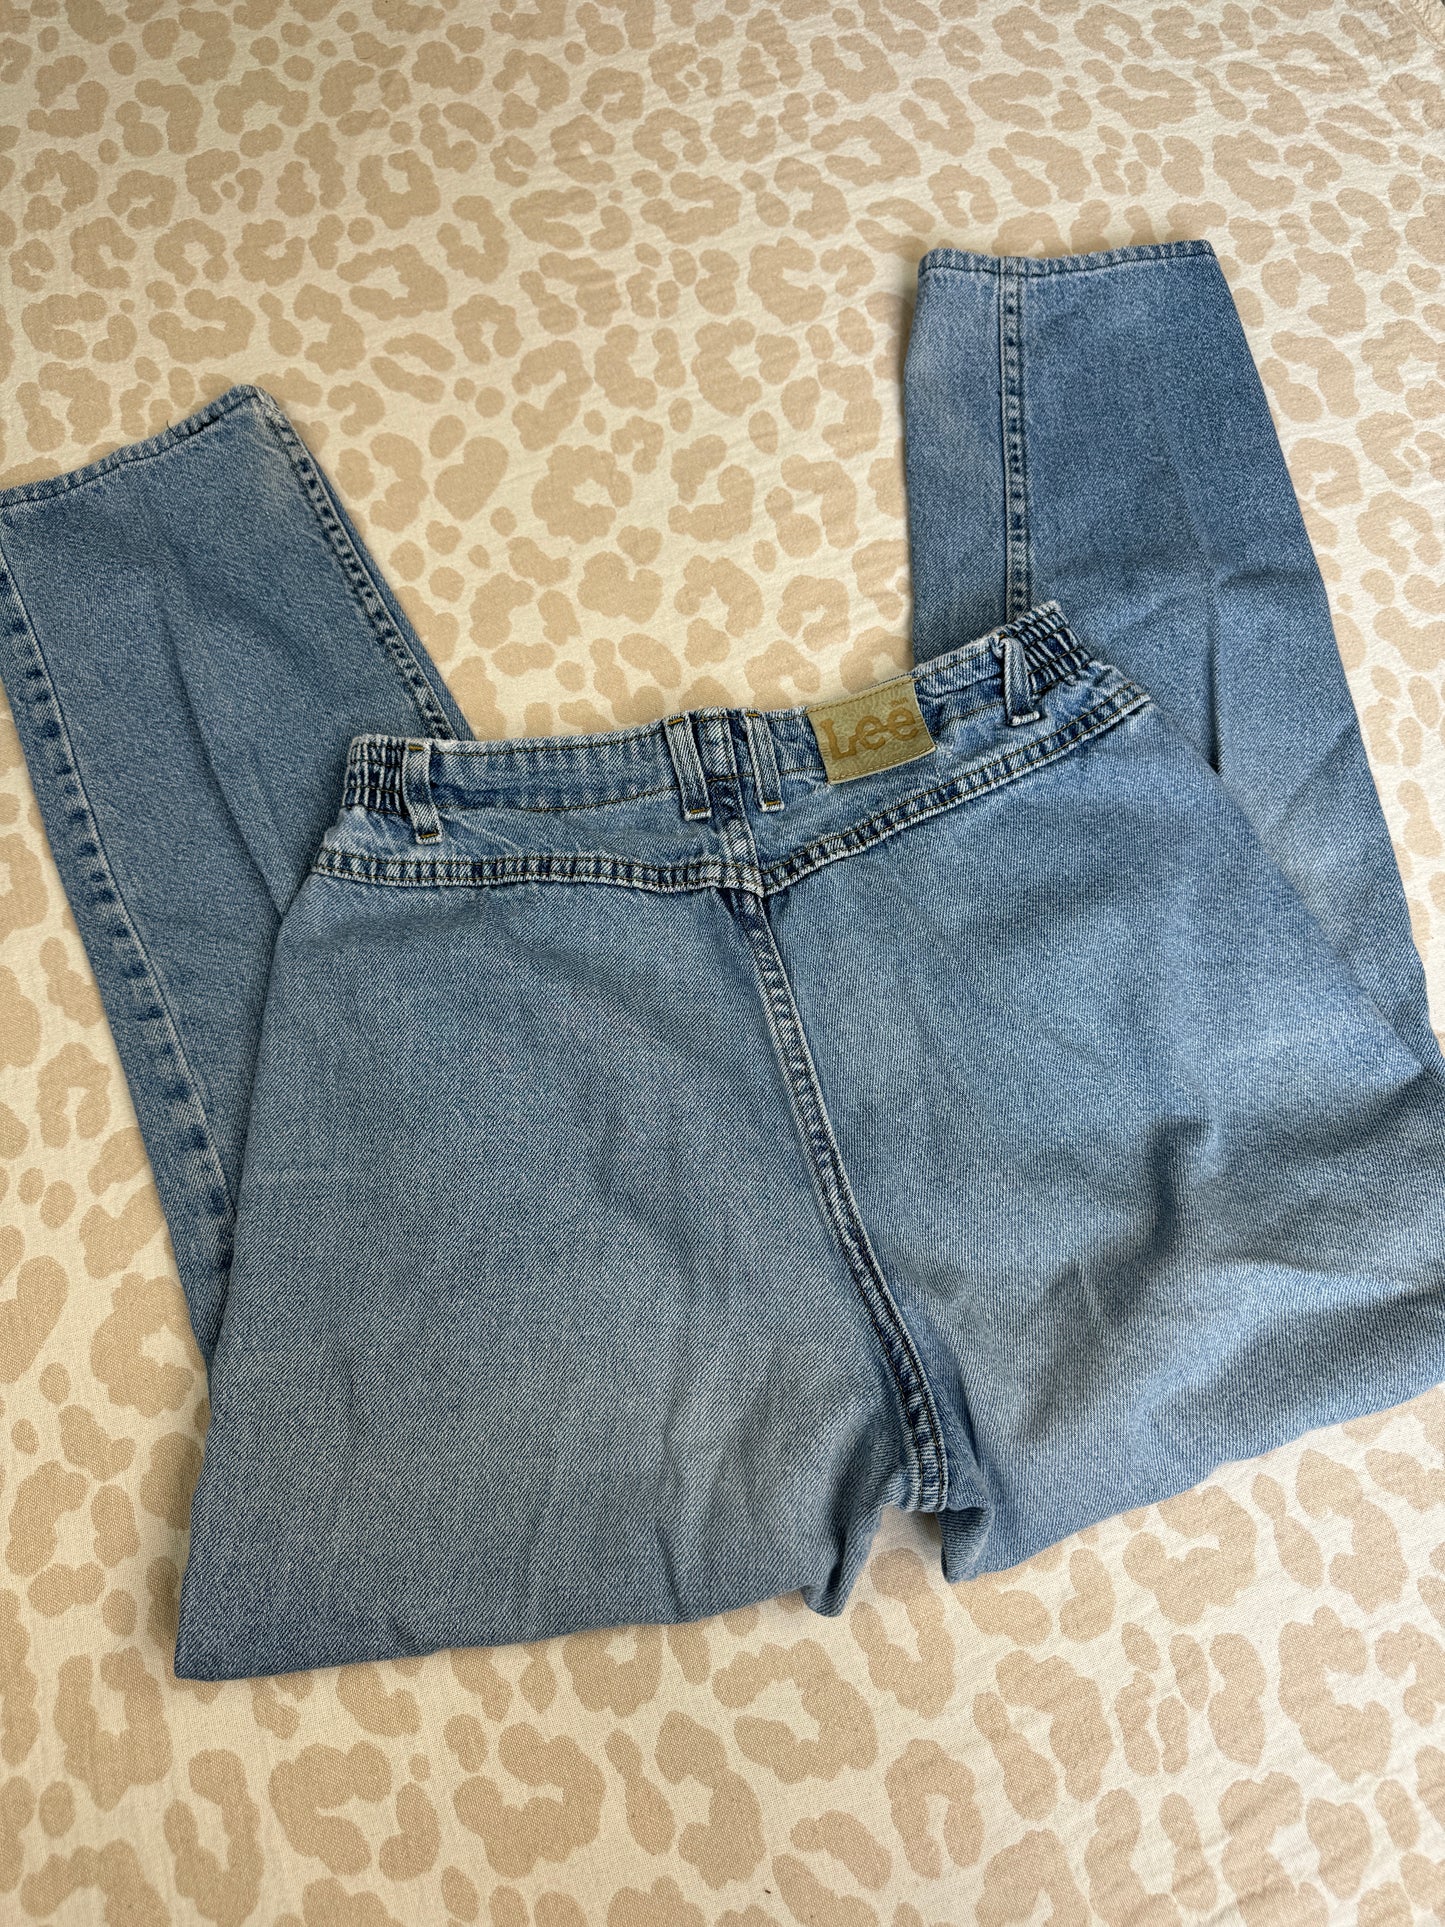 Vintage Lee Jeans (12)